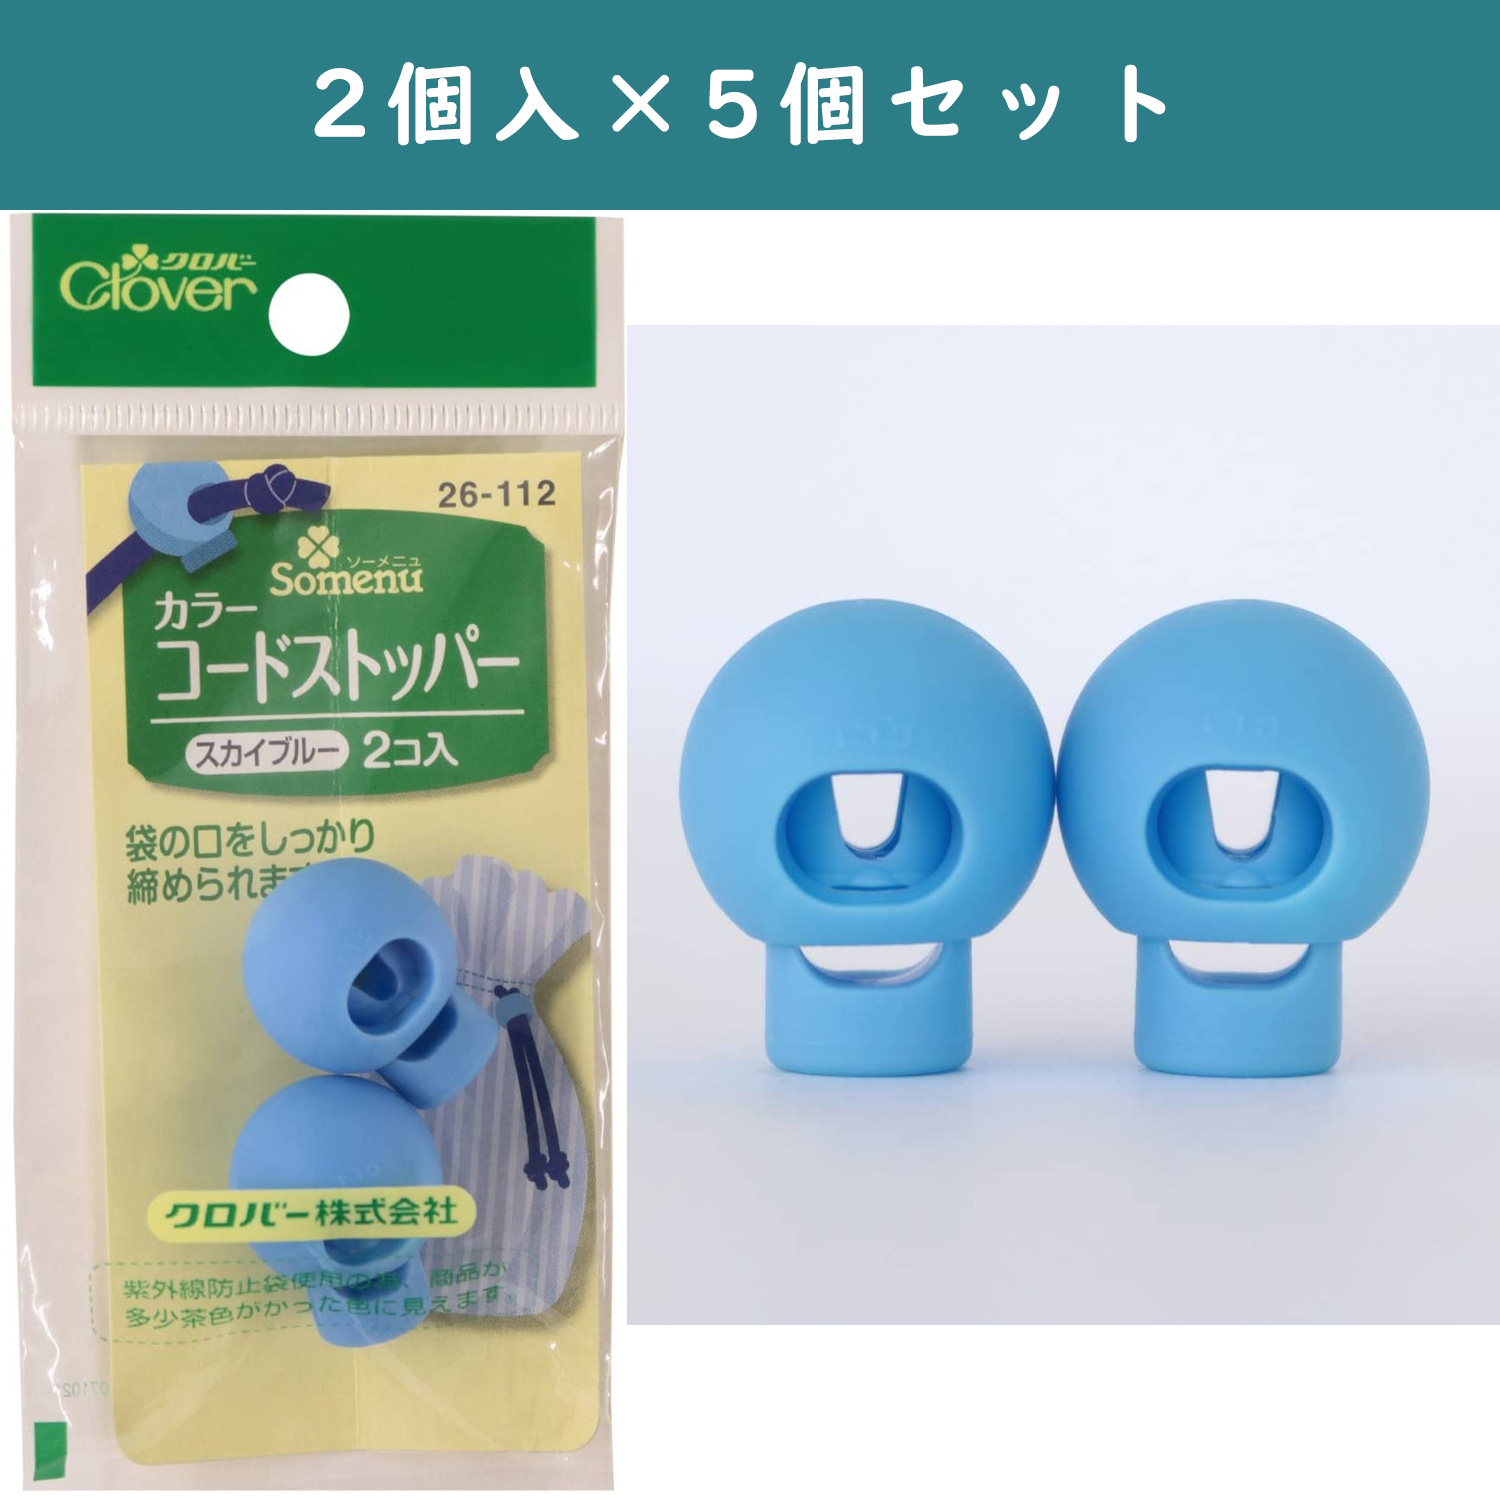 ■【5個】CL26-112-5set カラーコードストッパー 2個入 スカイブルー×5個 (セット)